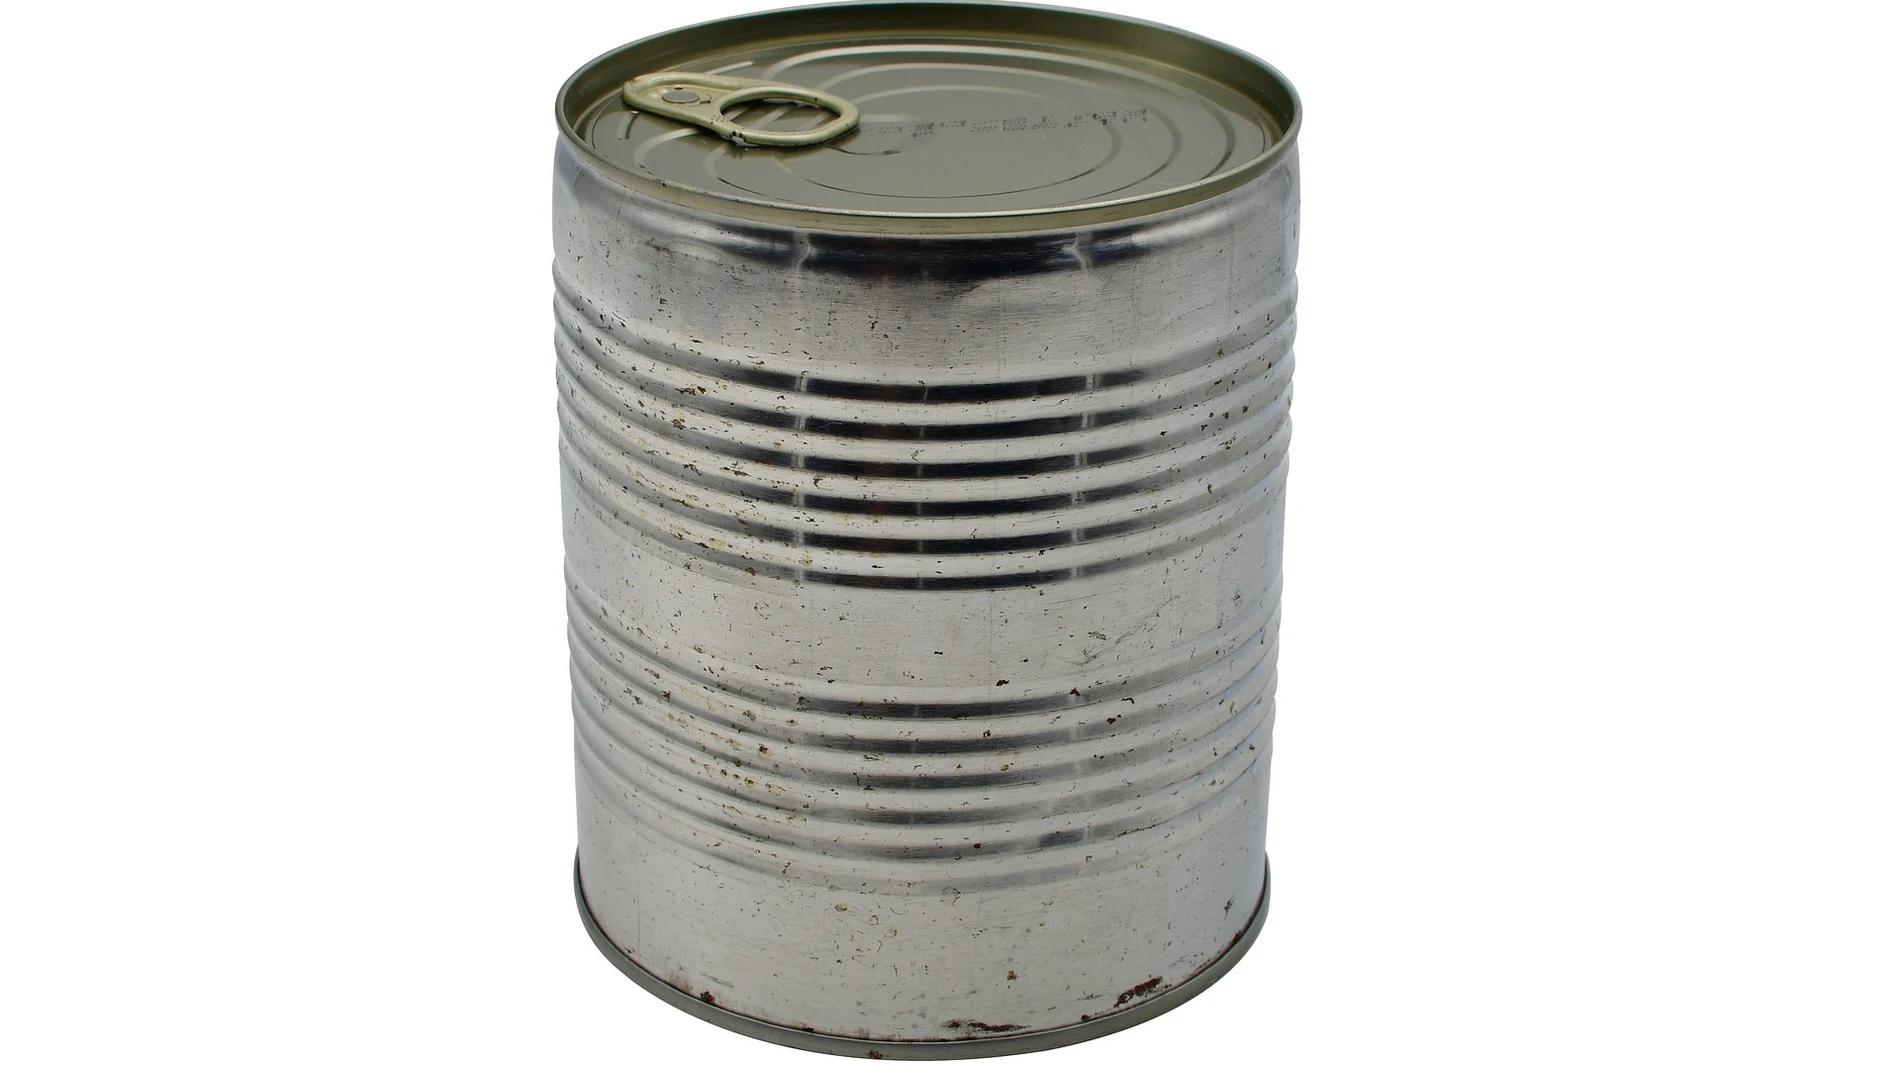 Las latas aparecieron primero en los campos de batalla para poder mantener bien alimentados a los soldados | Fuente: Pixabay / Damian Konietzny